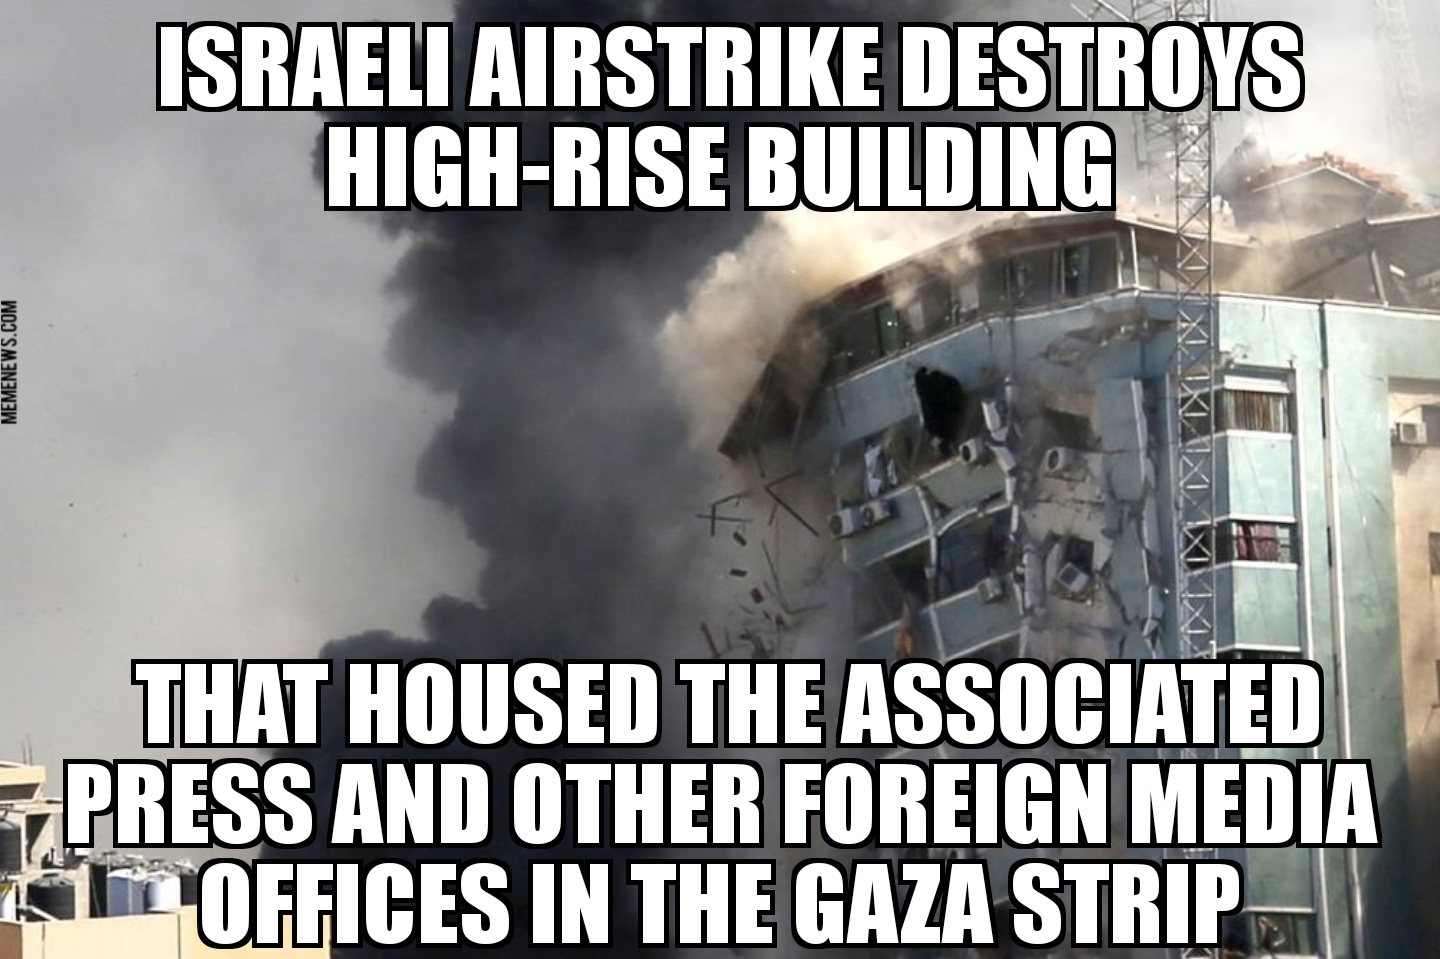 Israel airstrike destroys AP office in Gaza